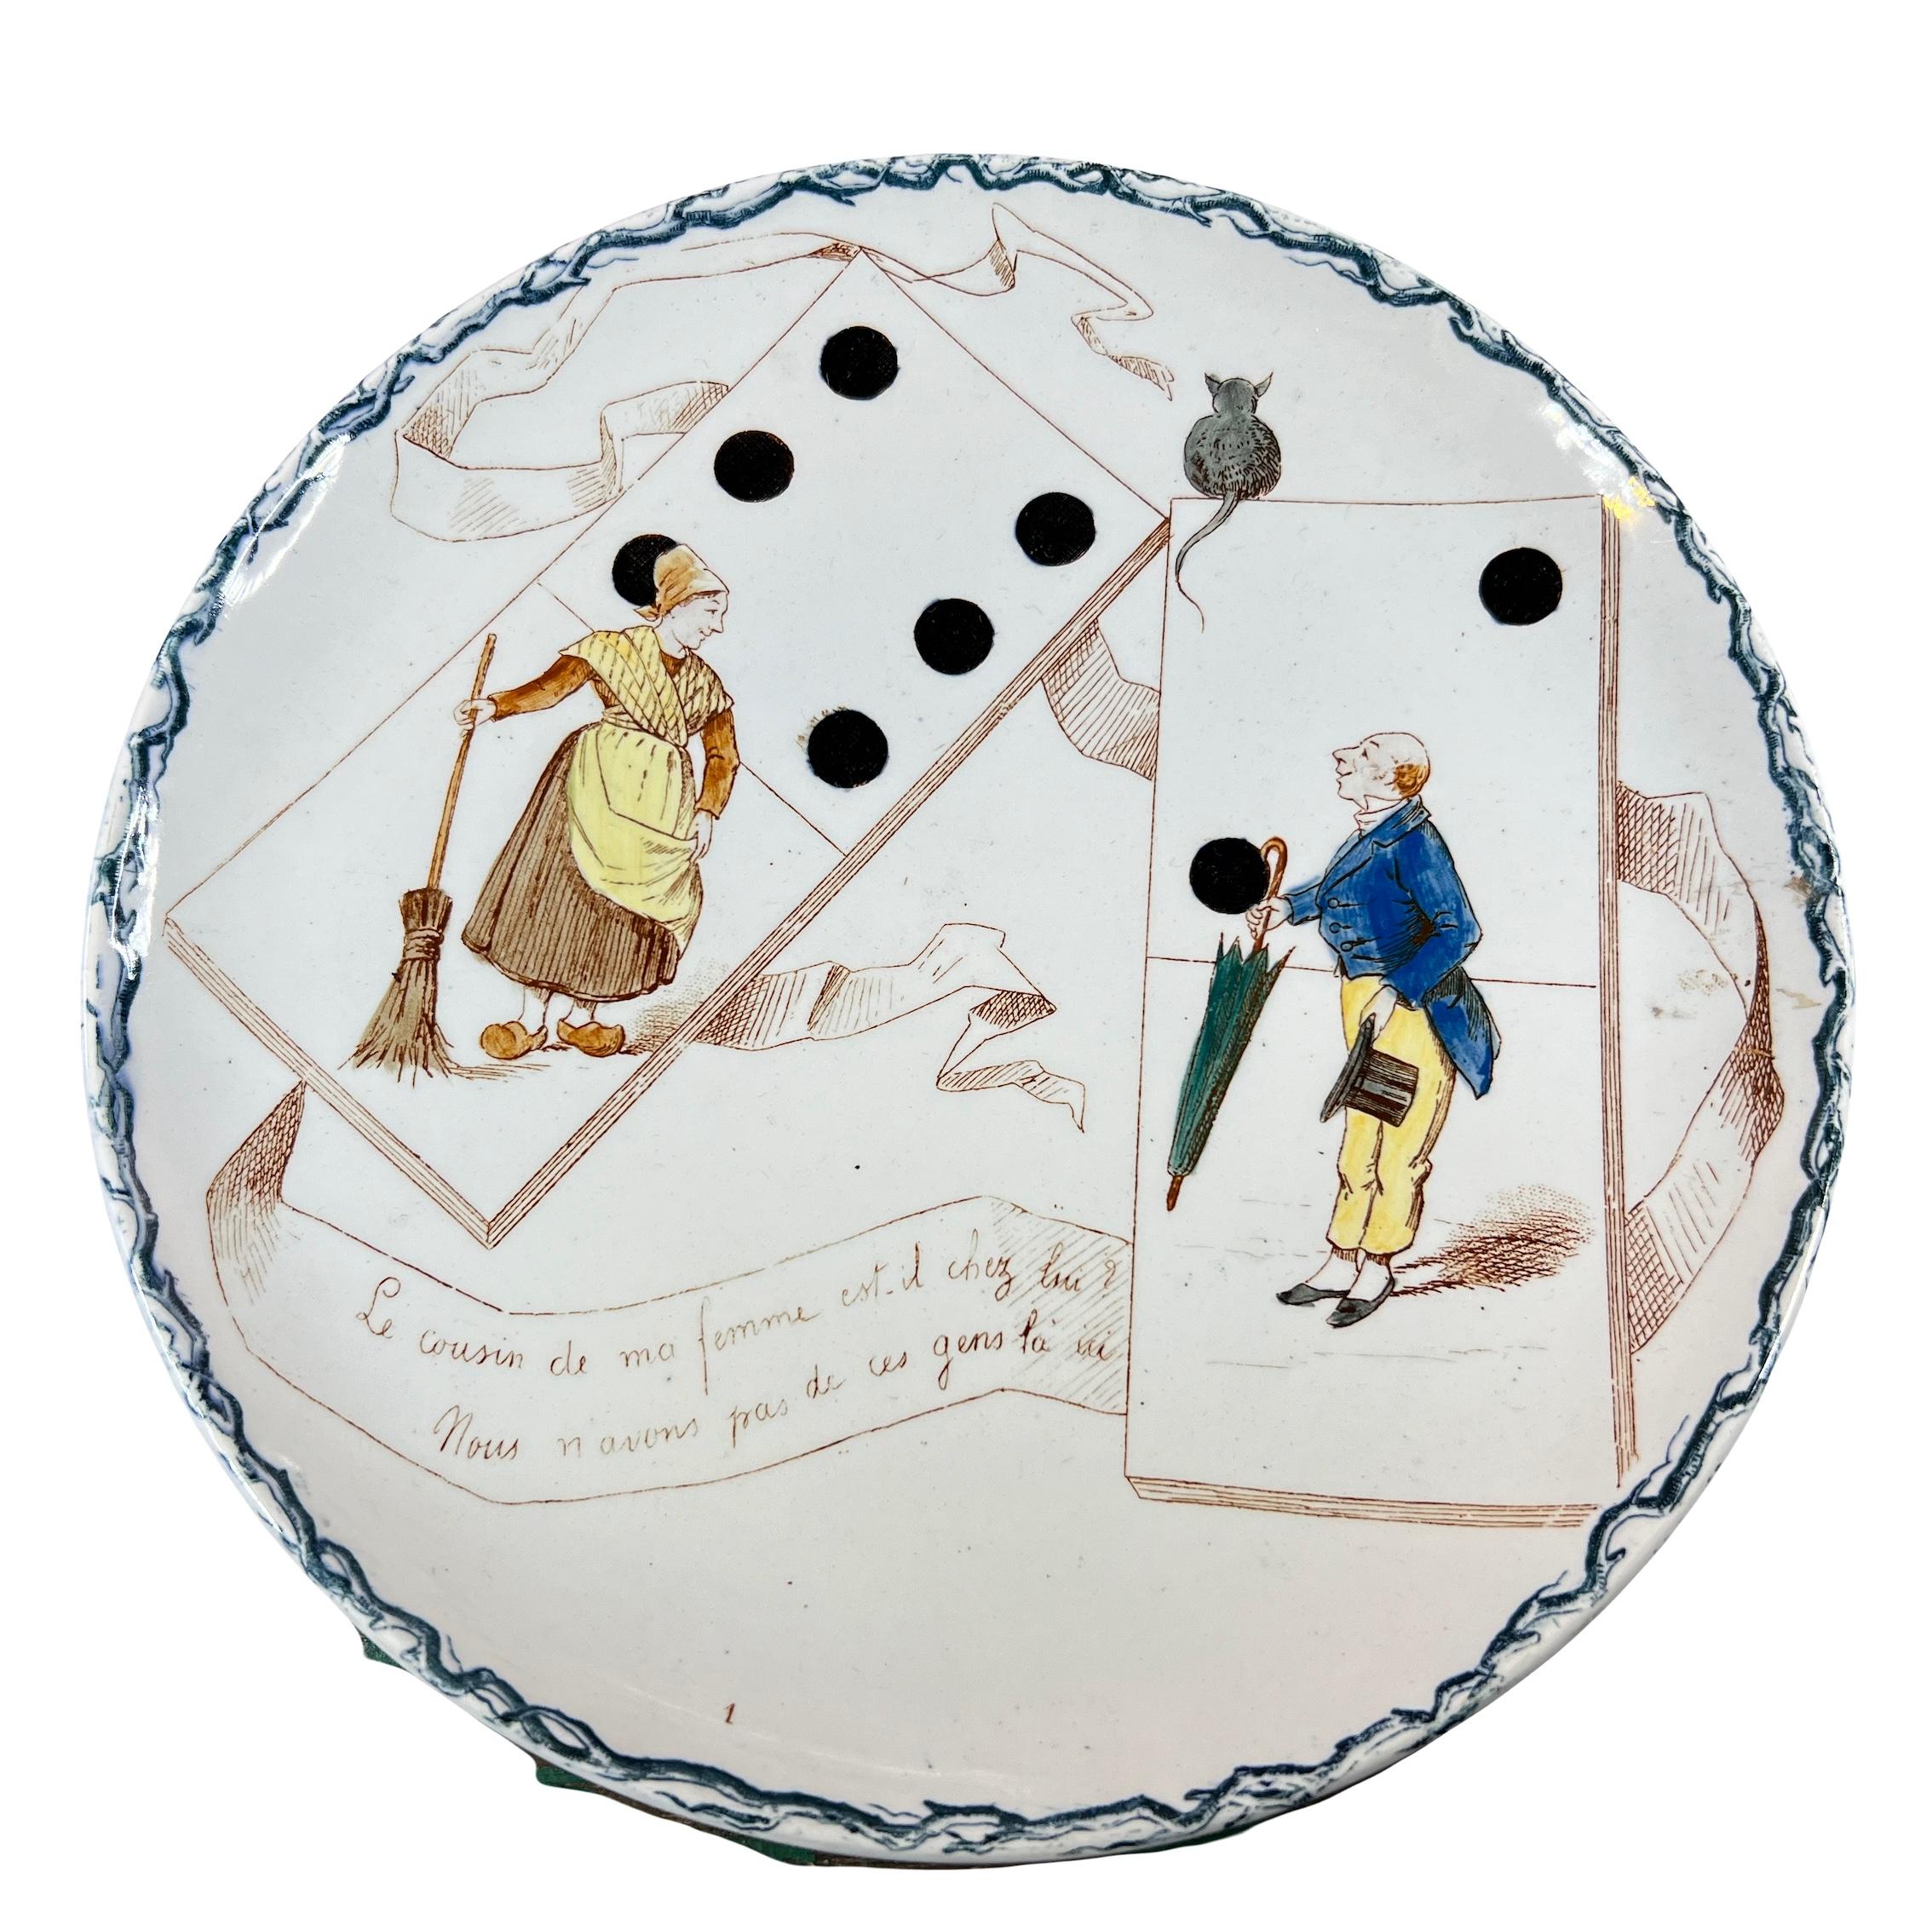 Ensemble de 2 assiettes humoristique sur le thème des jeux anciens, les dominos, par la manufacture française de Creil Montereau en 1890.

Sur l'assiette, nous voyons une femme en sabot, un balai à la main et sans l'autre un Homme avec un parapluie